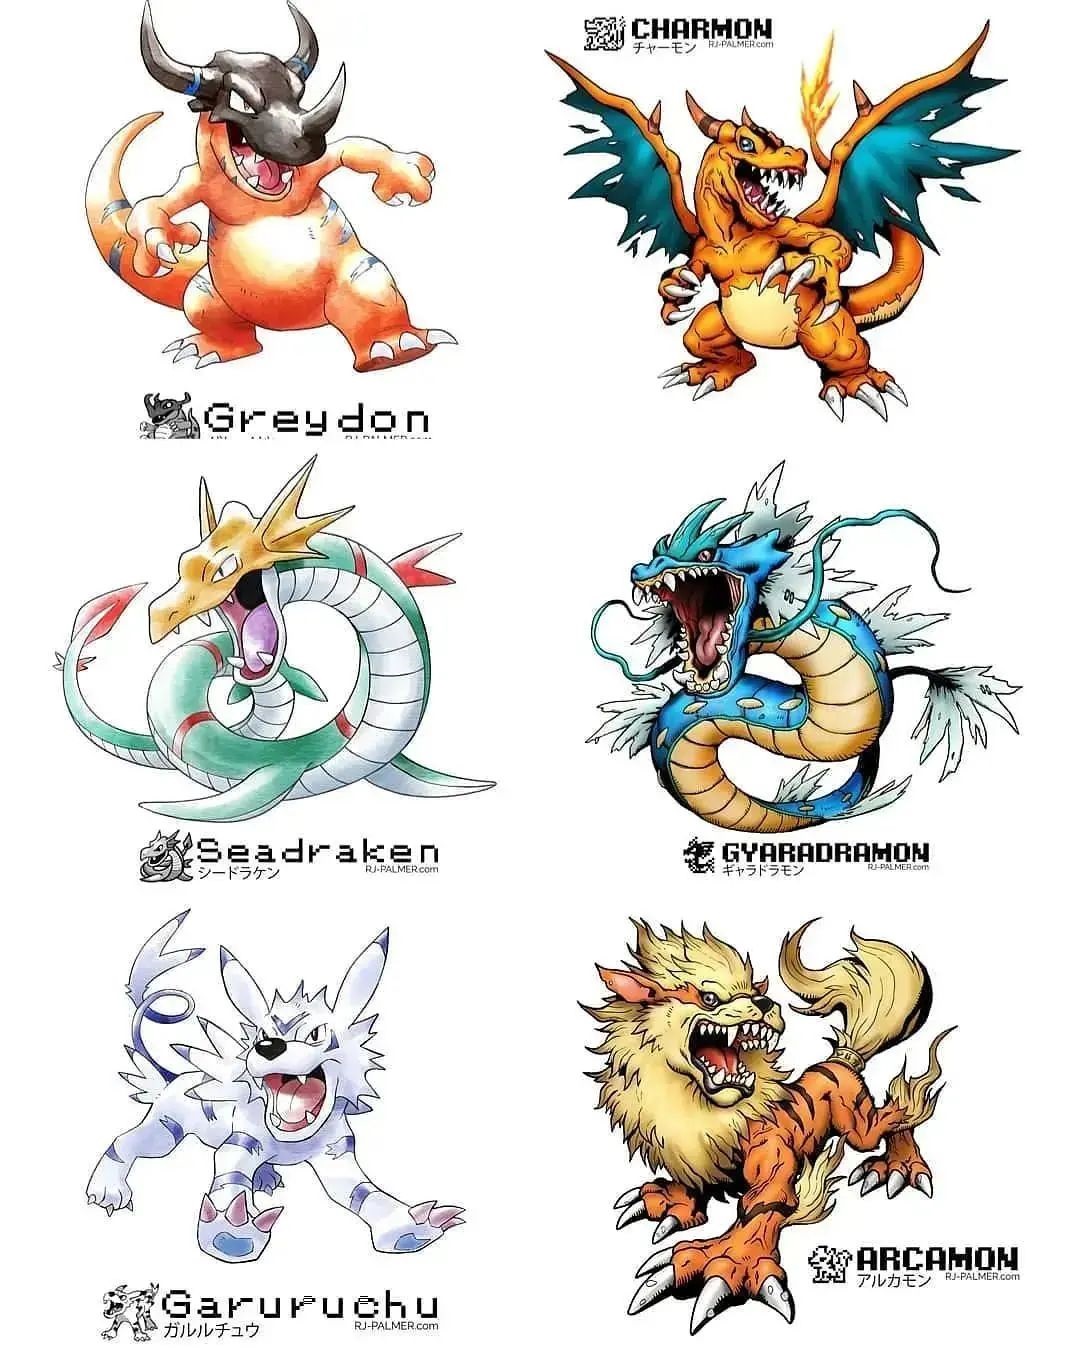 Artista inverte o traço de Pokémon e Digimon e cria novos monstrinhos em  ilustrações sensacionais